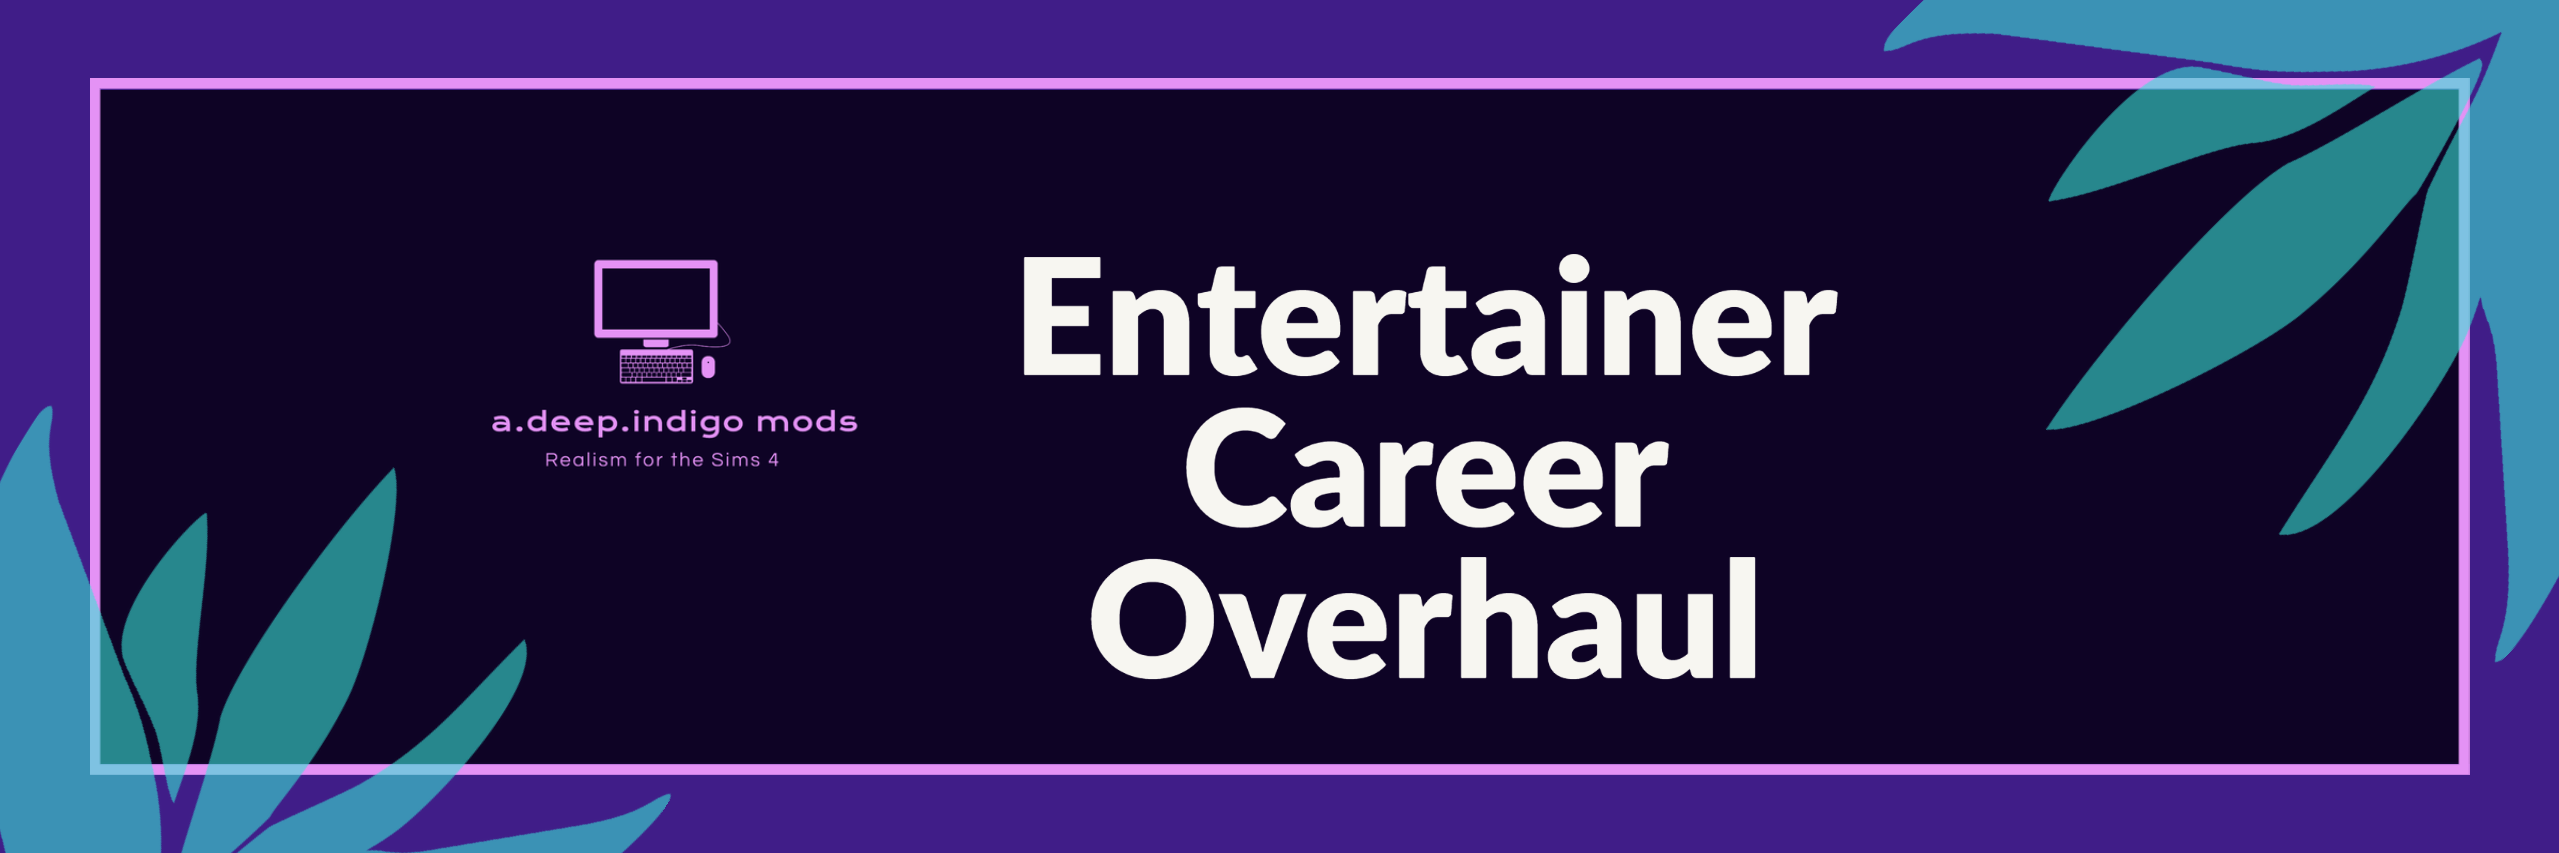 Entertainer Career Overhaul